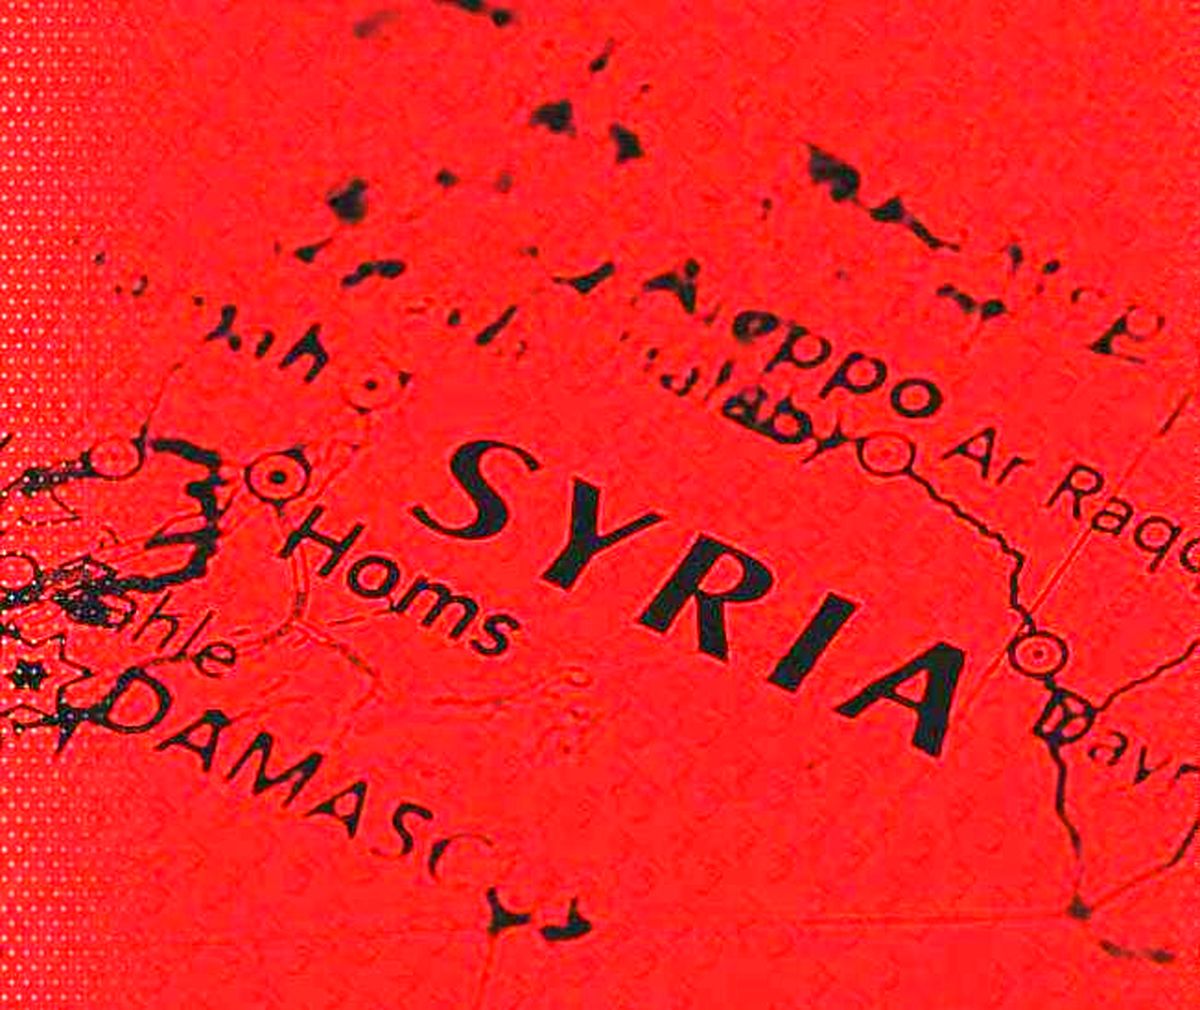 فدرالیزاسیون یا بالکانیزاسیون سوریه؟